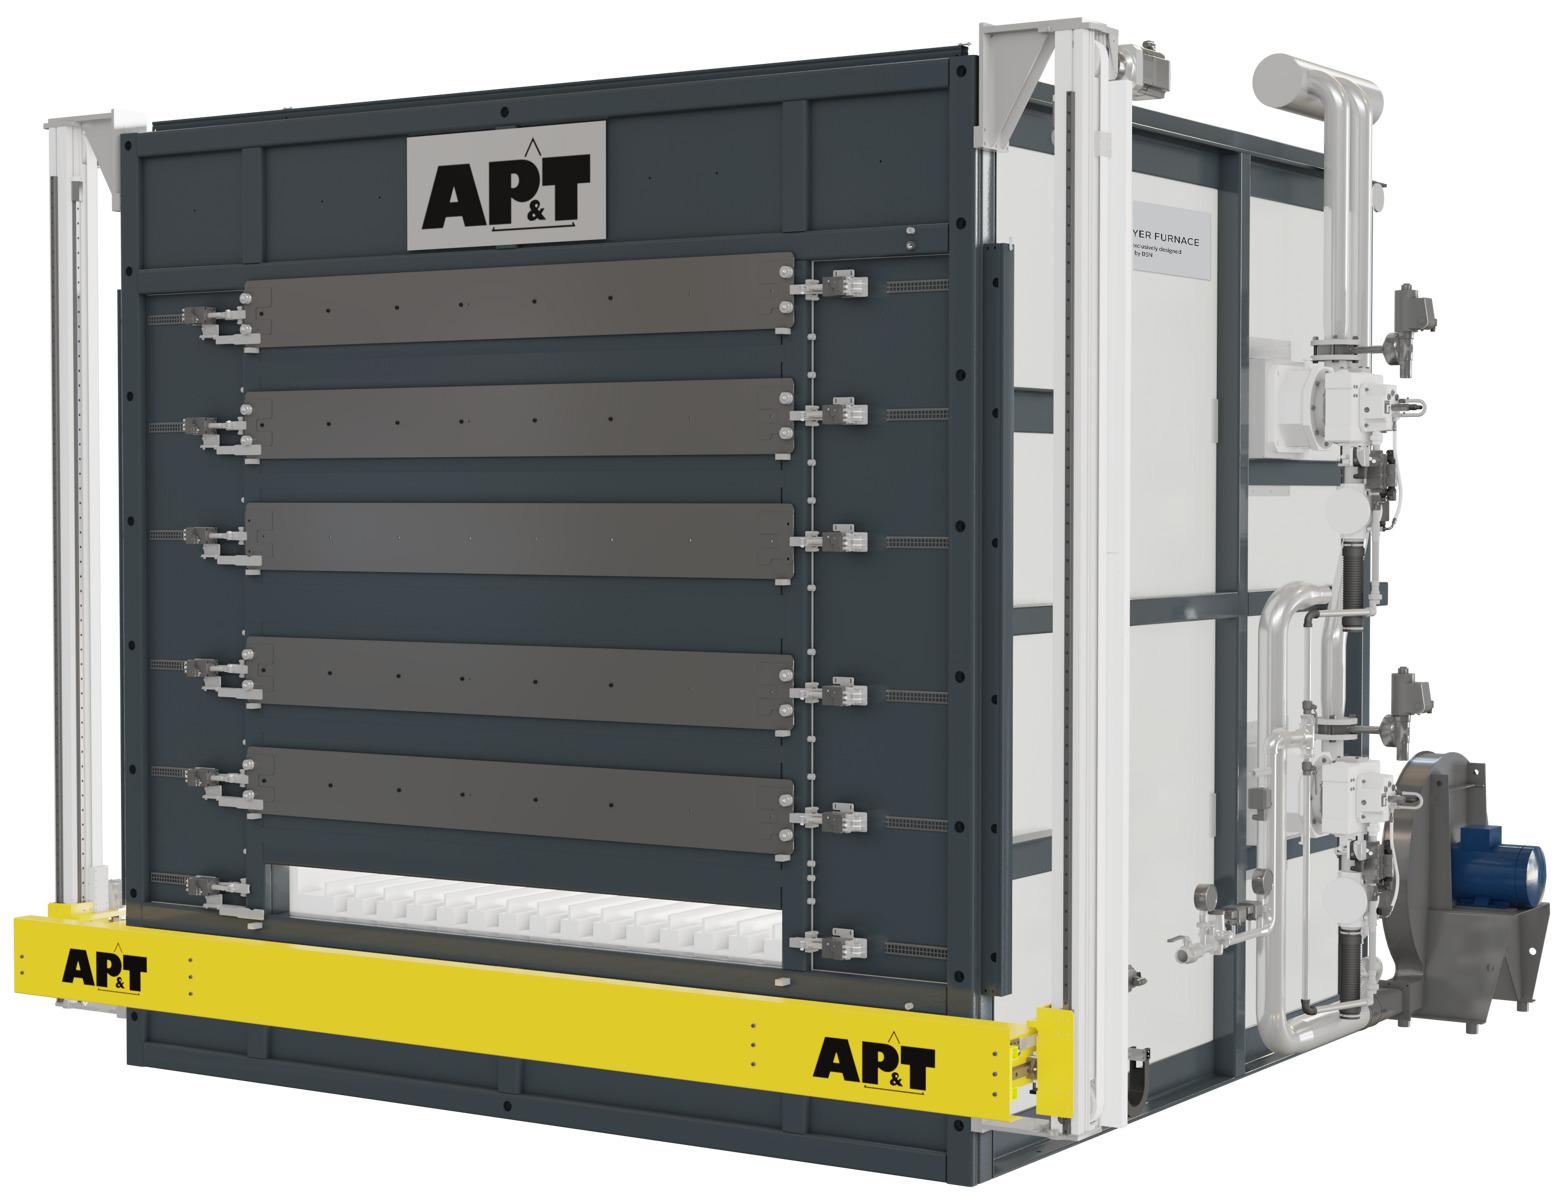 Der energieeffiziente elektrische Multi-Layer Furnace von AP&T ist in unterschiedlichen Ausführungen zum Presshärten von Stahl und Warmumformen von Aluminium erhältlich.